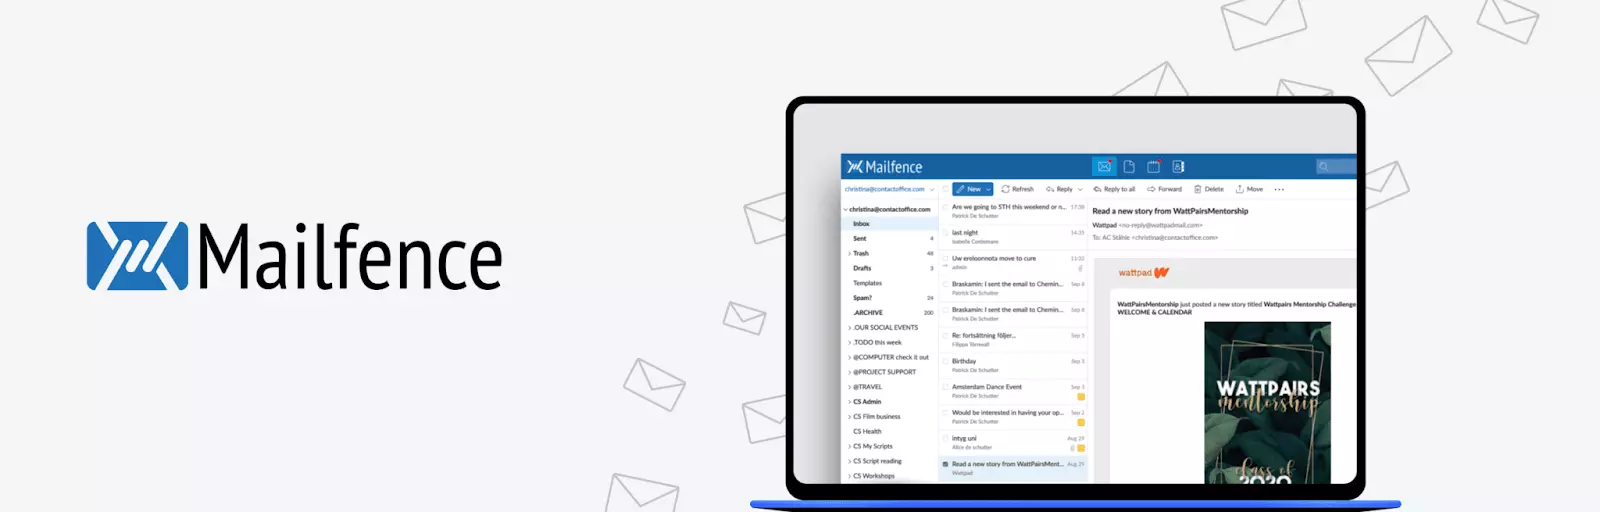 Mailfence - Alternativas Fastmail